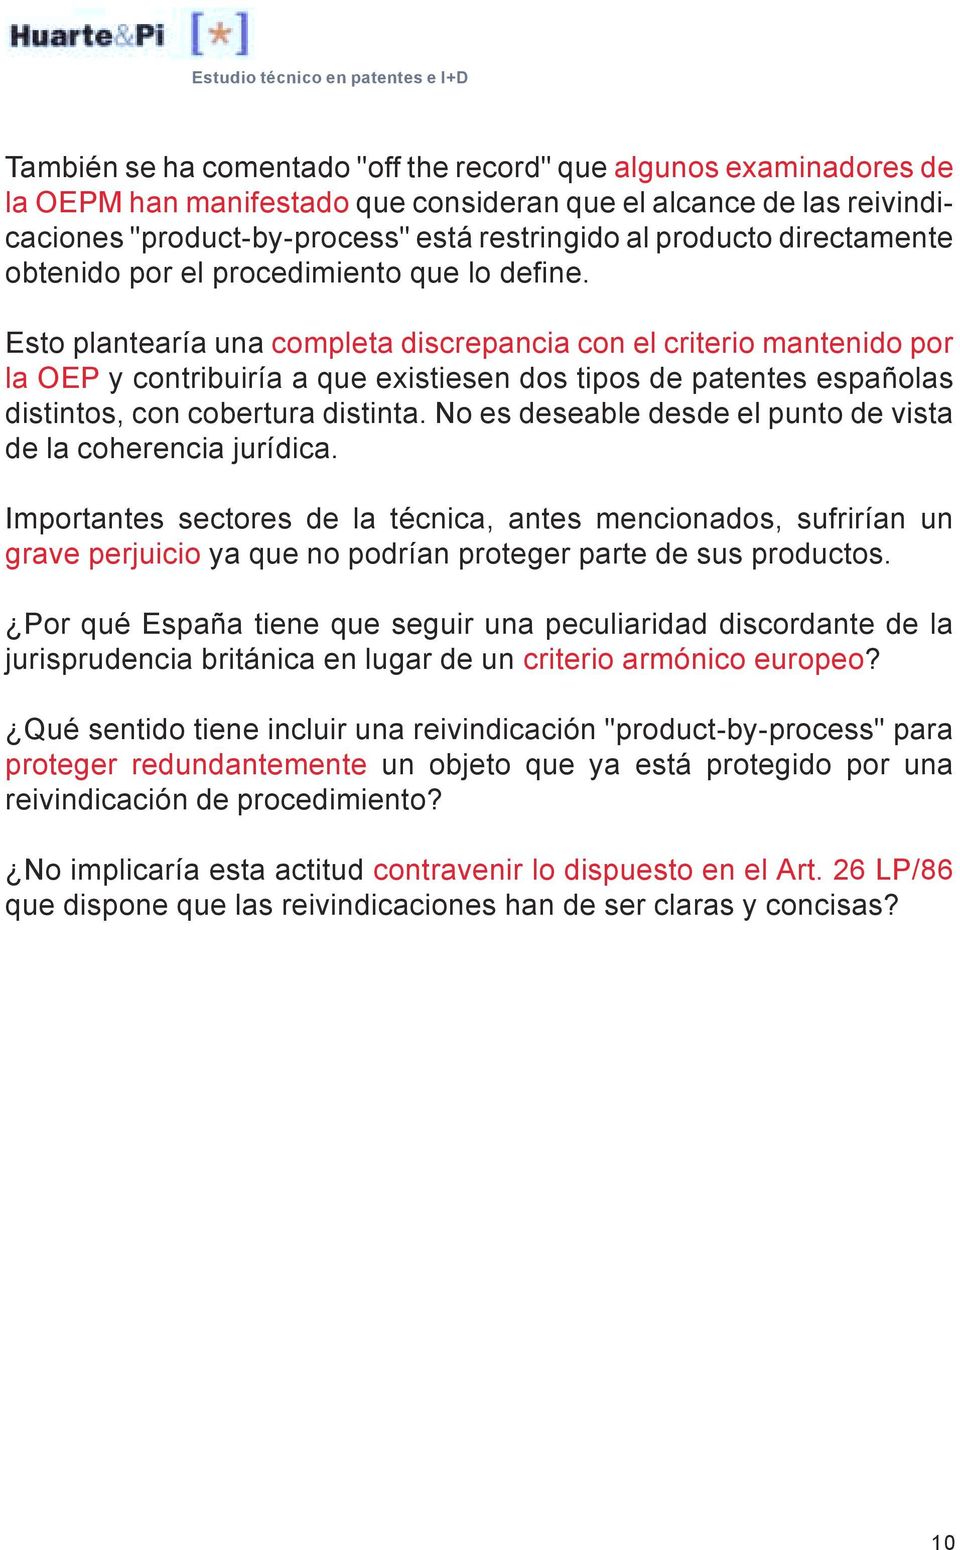 Esto plantearía una completa discrepancia con el criterio mantenido por la OEP y contribuiría a que existiesen dos tipos de patentes españolas distintos, con cobertura distinta.